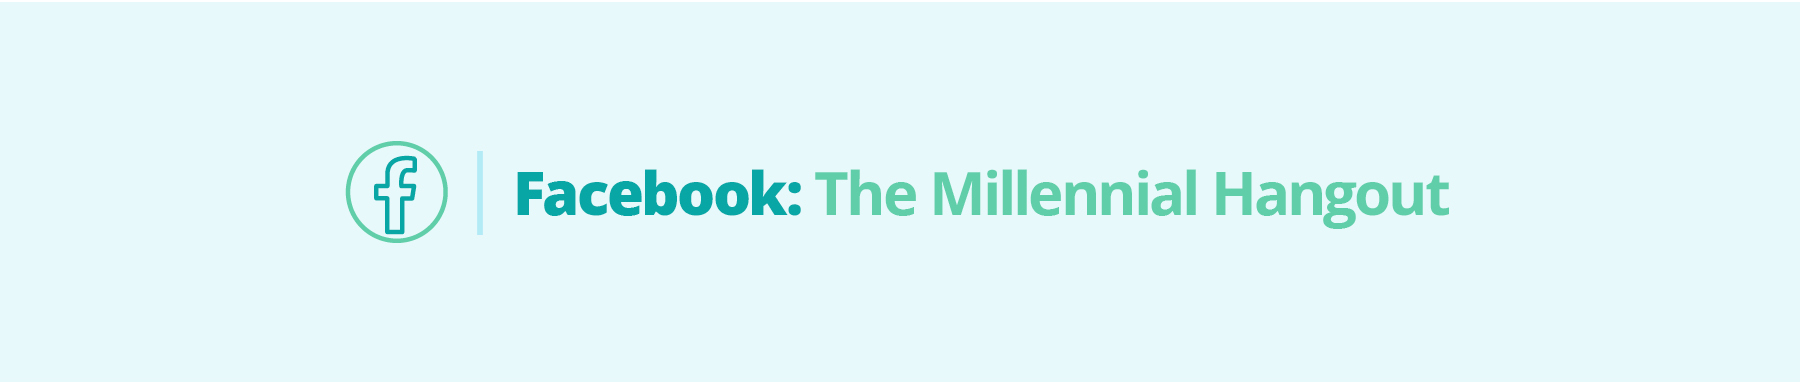 Facebook: The Millennial Hangout